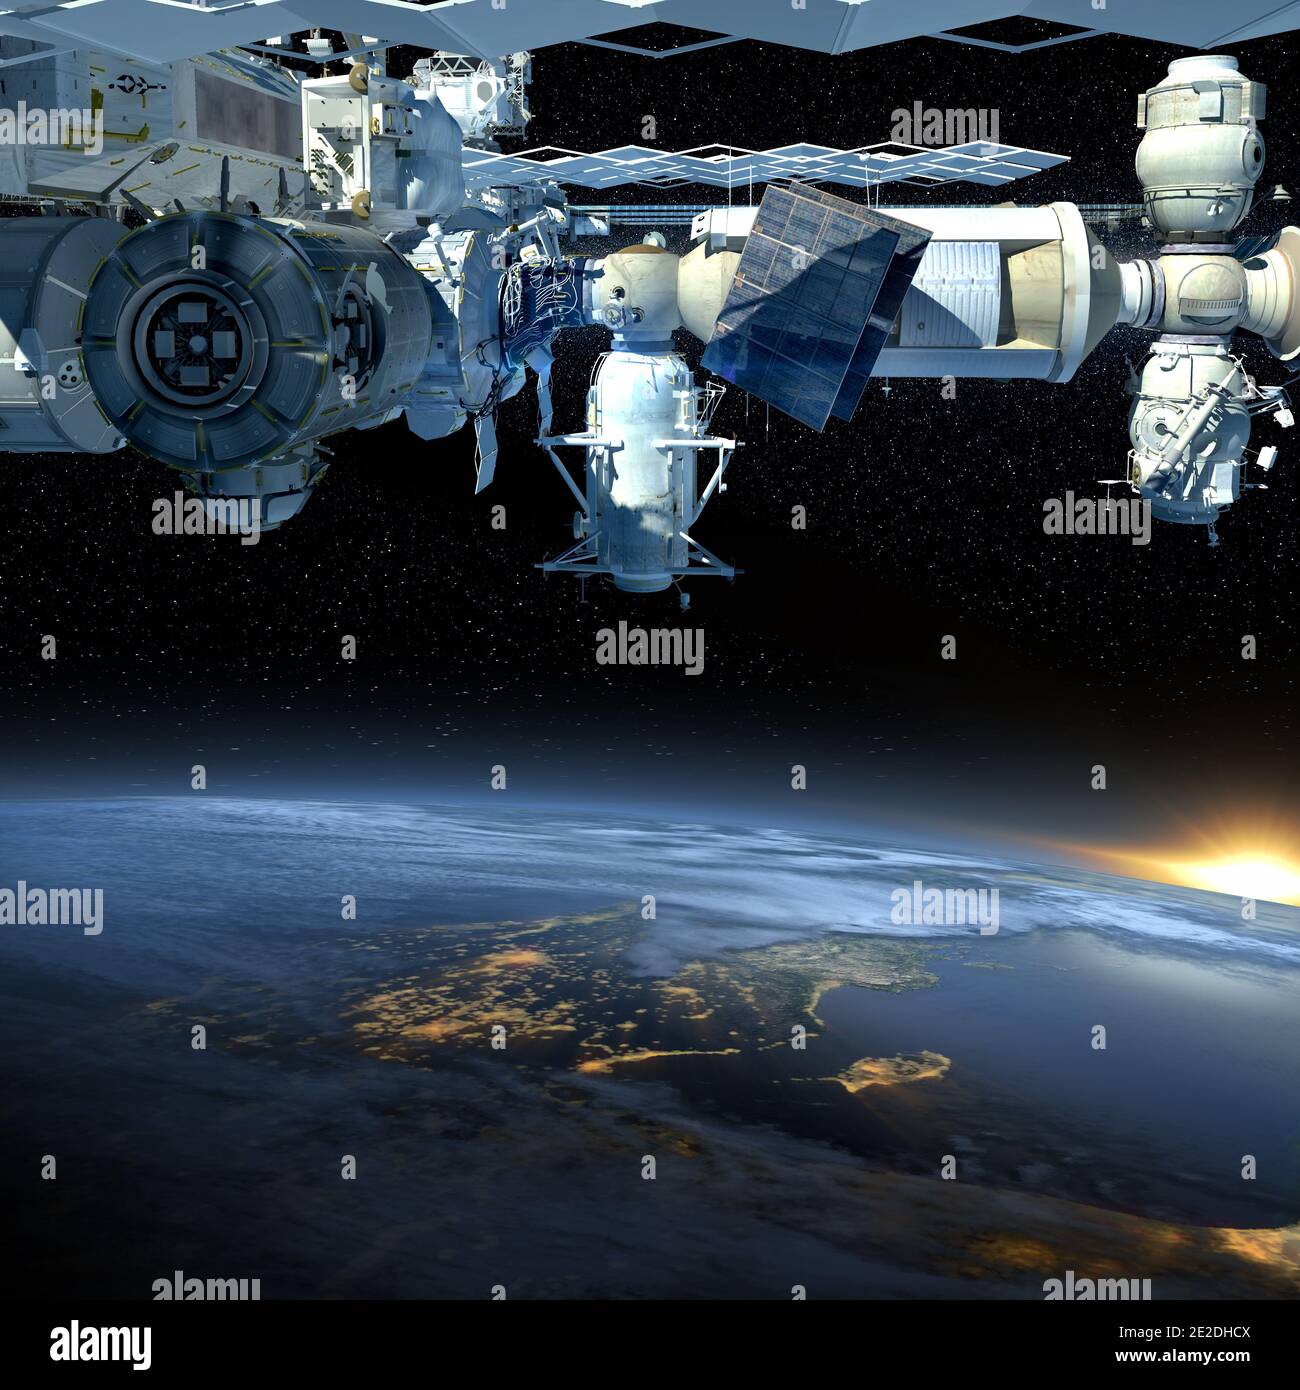 Rendering 3D della Stazione spaziale Internazionale che vola sopra la Terra, mostrando la sua architettura modulare dettagliata. Elementi di questa immagine forniti da NAS Foto Stock